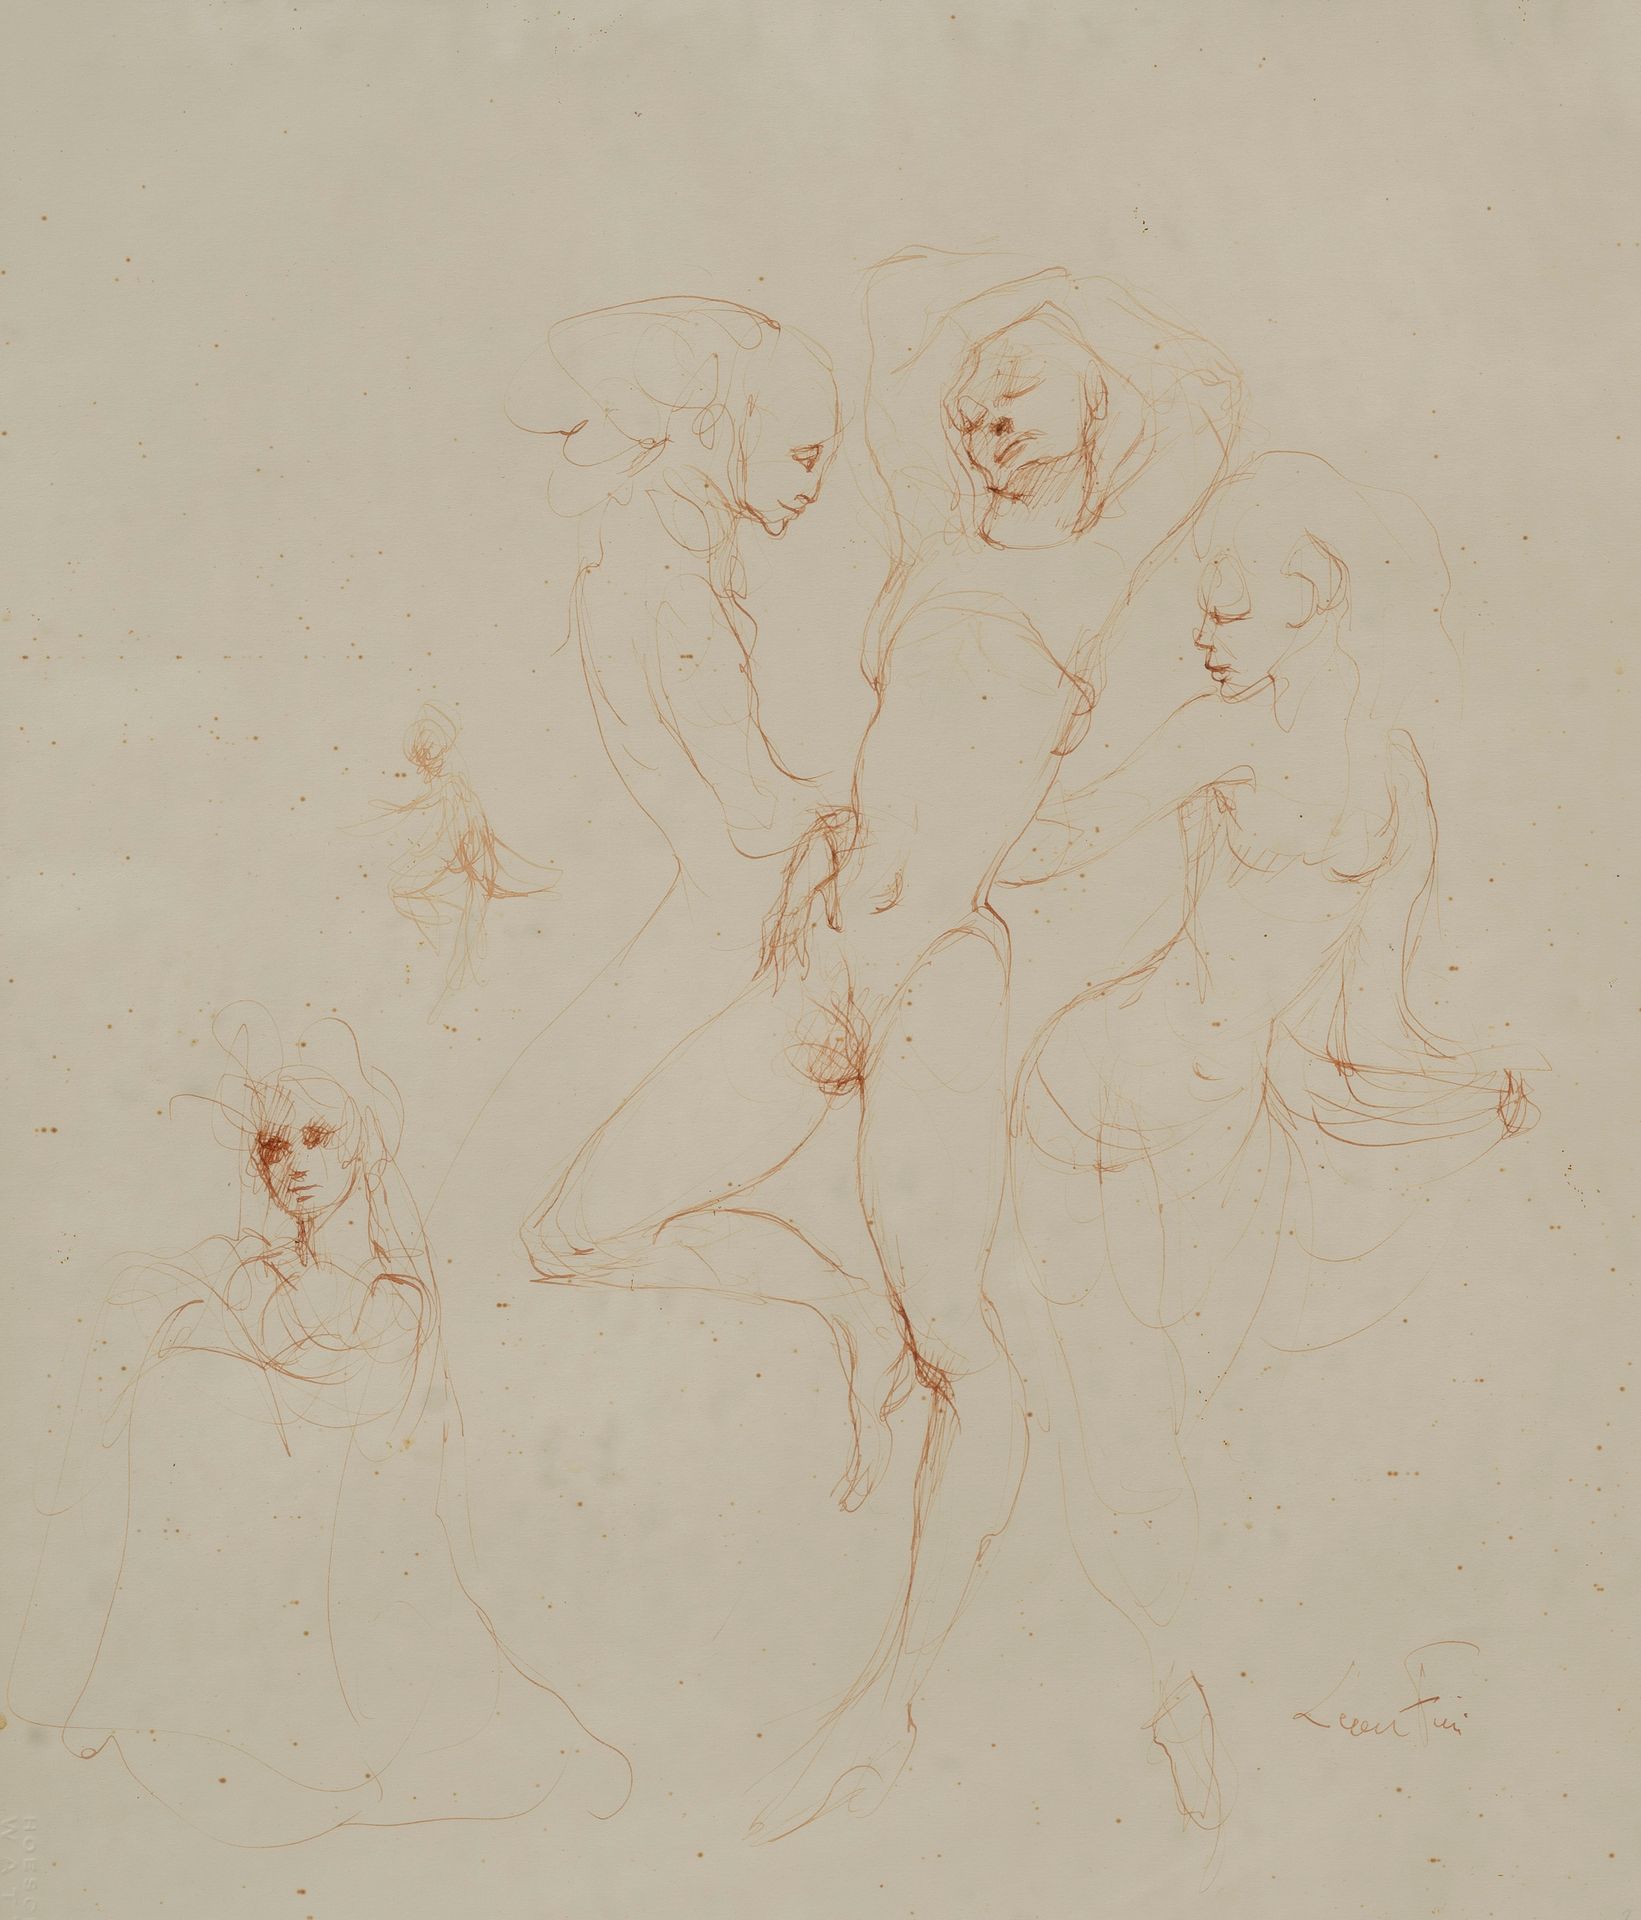 Null 莱昂诺-菲尼 (1907-1996)

素描（妇女研究

纸上水墨，右下方签名。

明斯基画廊1999年12月29日的证书

36 x 31厘米